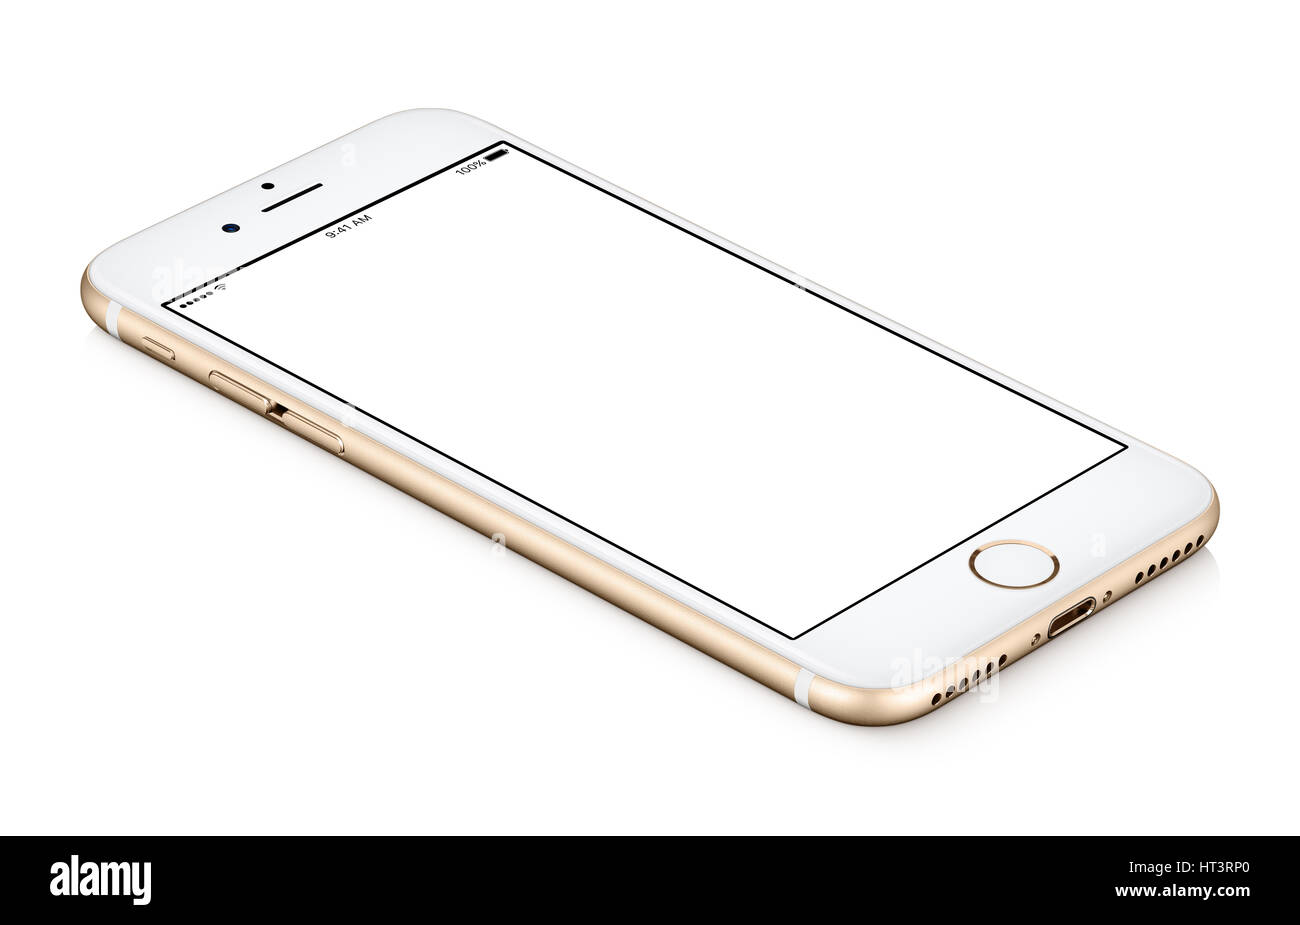 Oro mobile smart phone mock up ruotato in senso antiorario giace sulla superficie con schermo vuoto isolato su sfondo bianco. Foto Stock